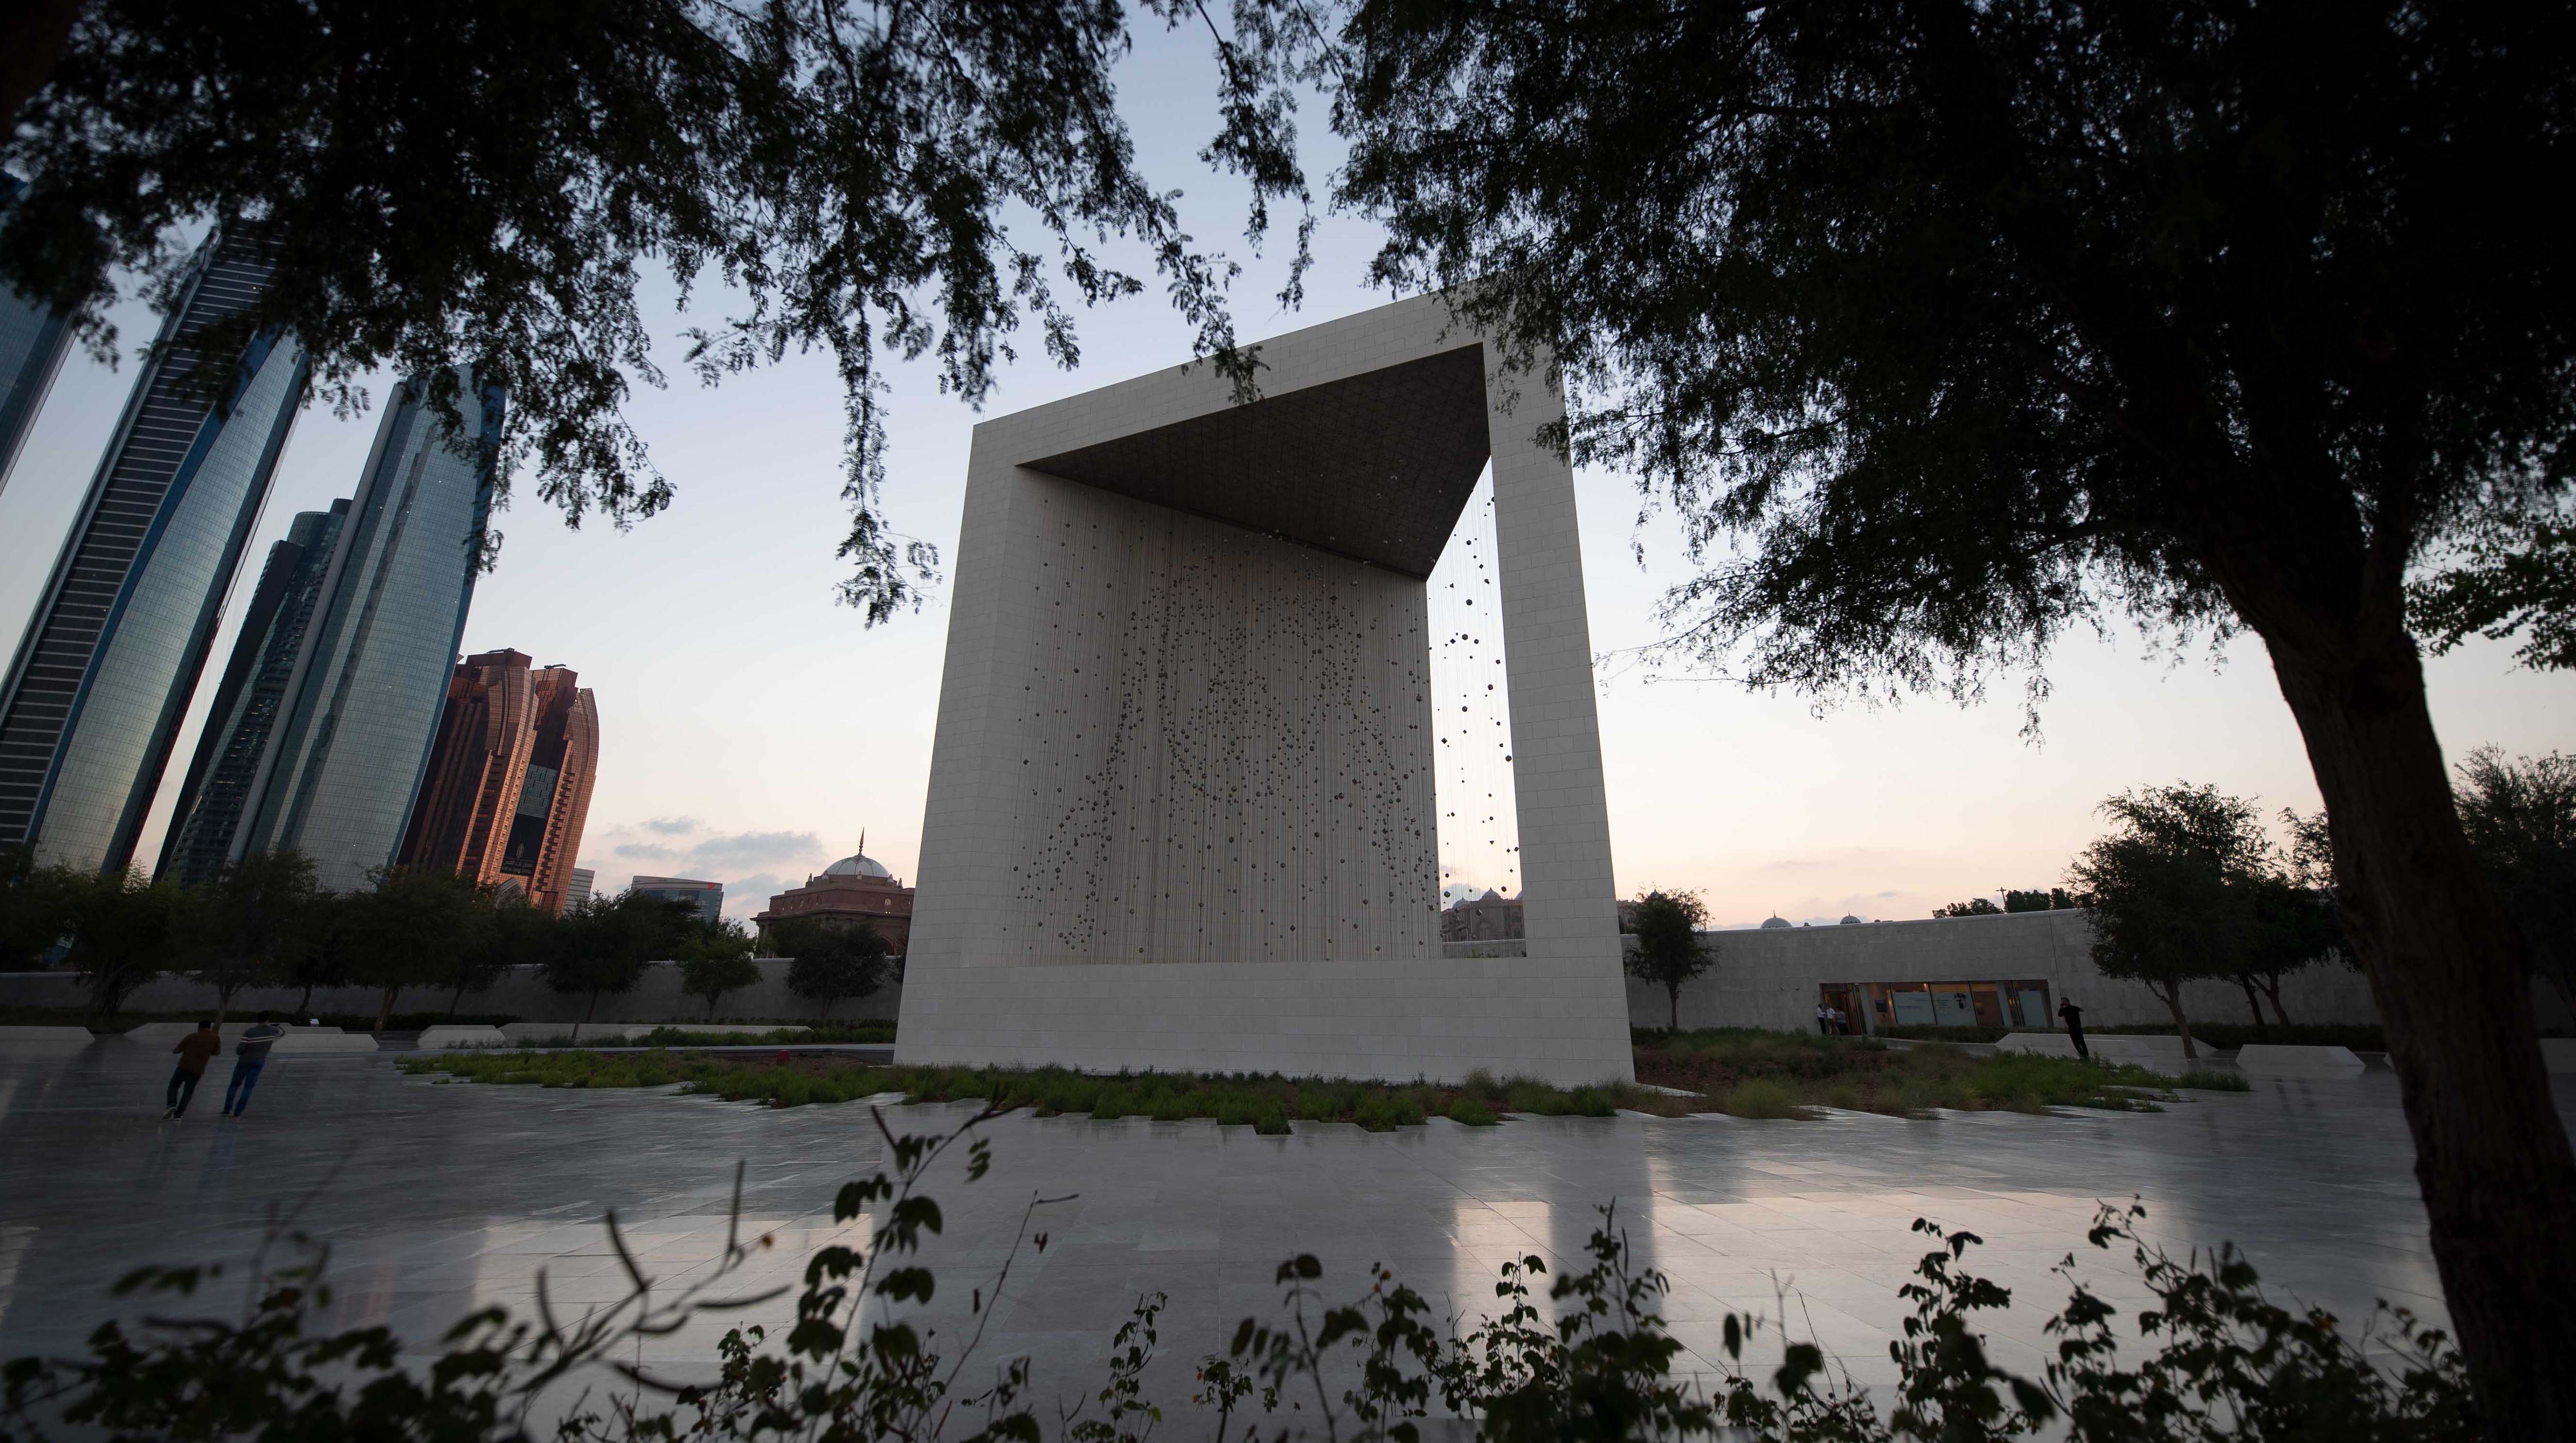 8. Dowiedz się więcej o Zjednoczonych Emiratach Arabskich pod Pomnikiem Założyciela (Founder’s Memorial)